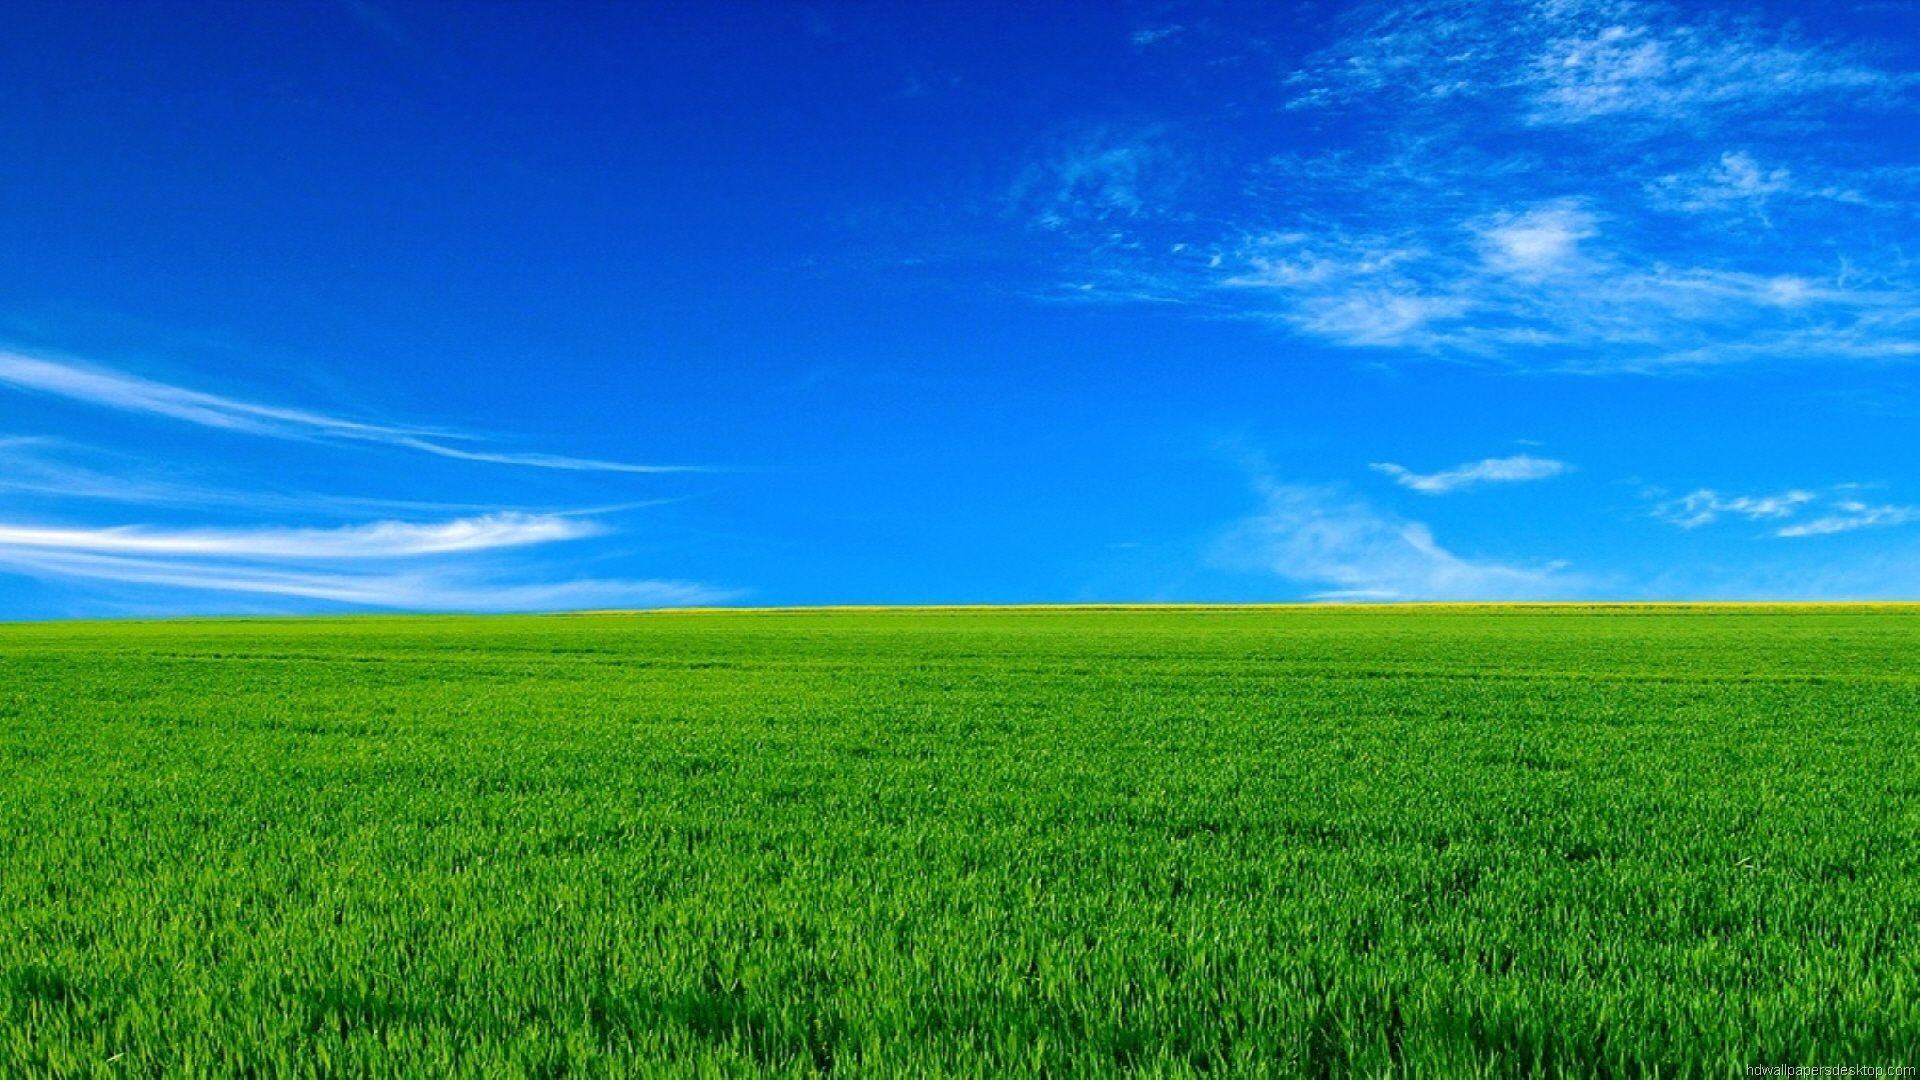 Hình nền đồng cỏ xanh bạt ngàn